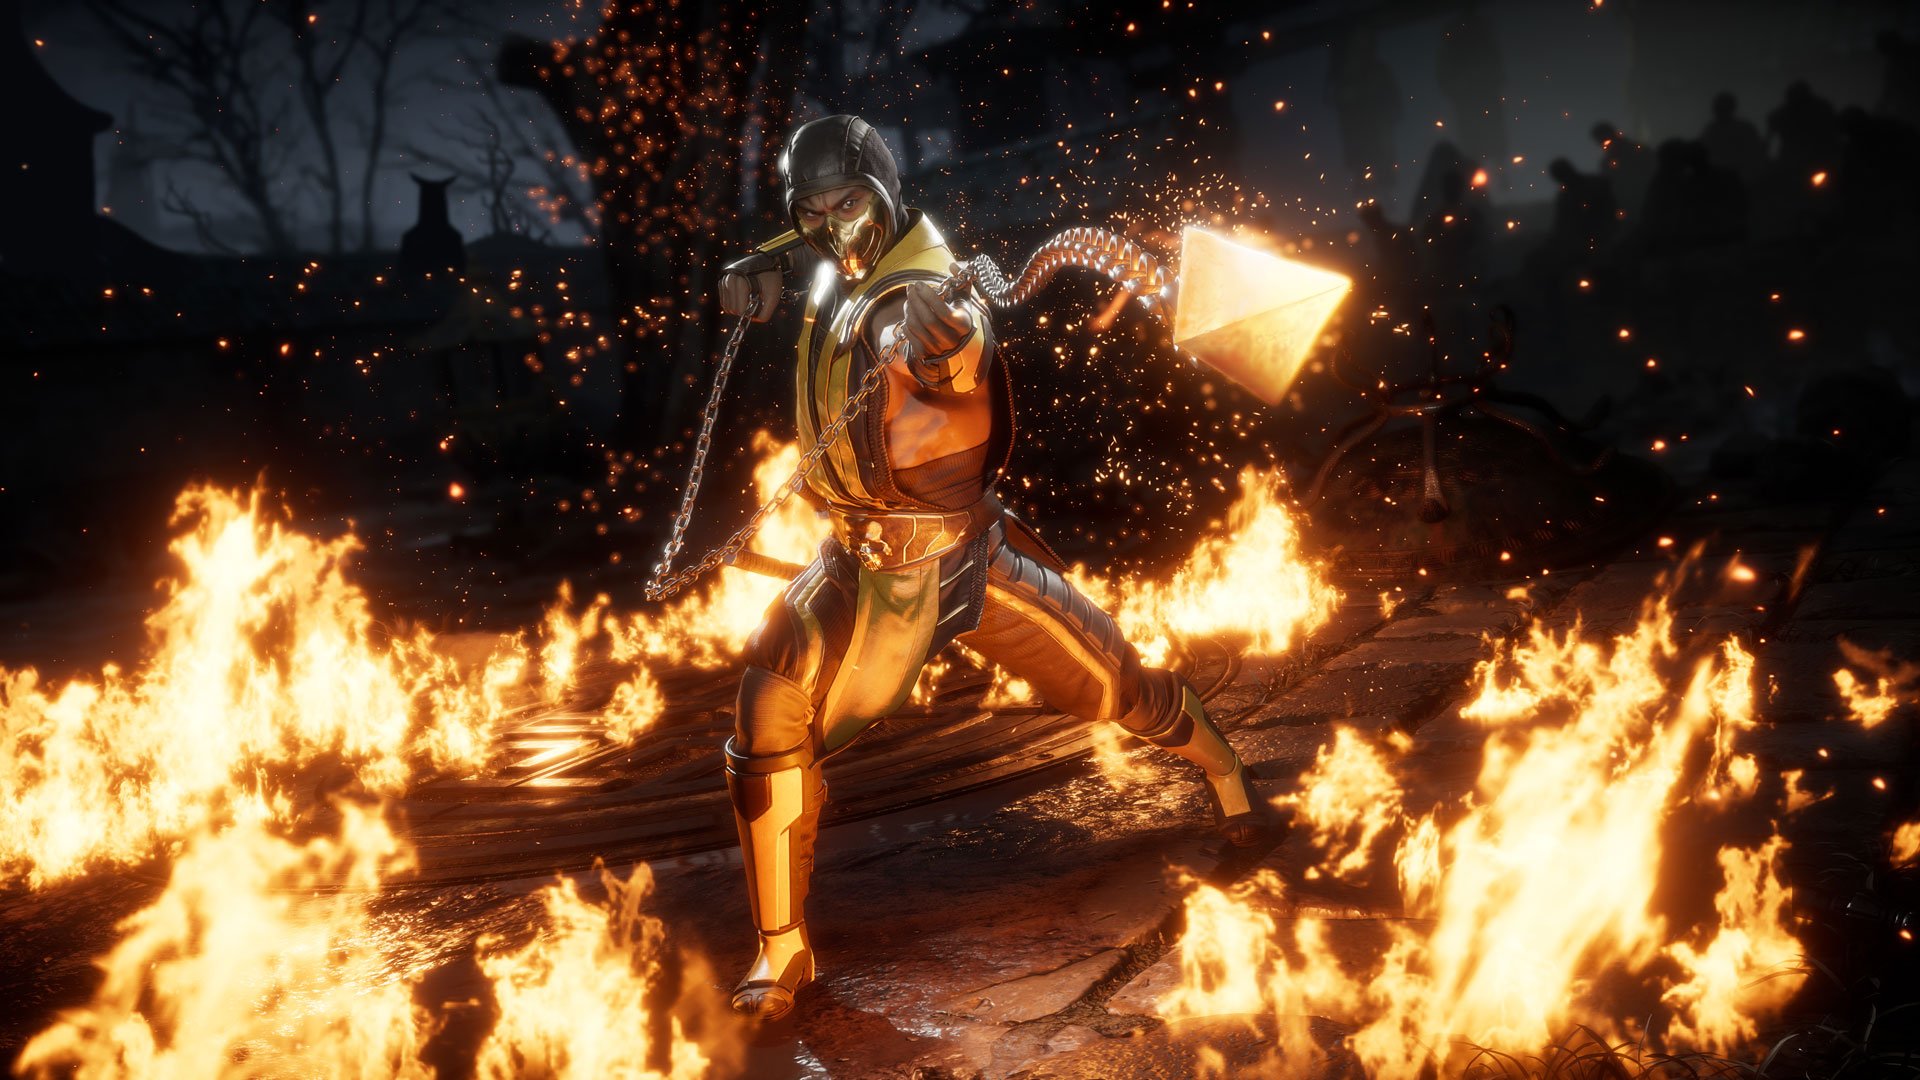 Скриншот 1 к игре Mortal Kombat 11 Premium Edition (2019) скачать торрент RePack от R.G. Механики